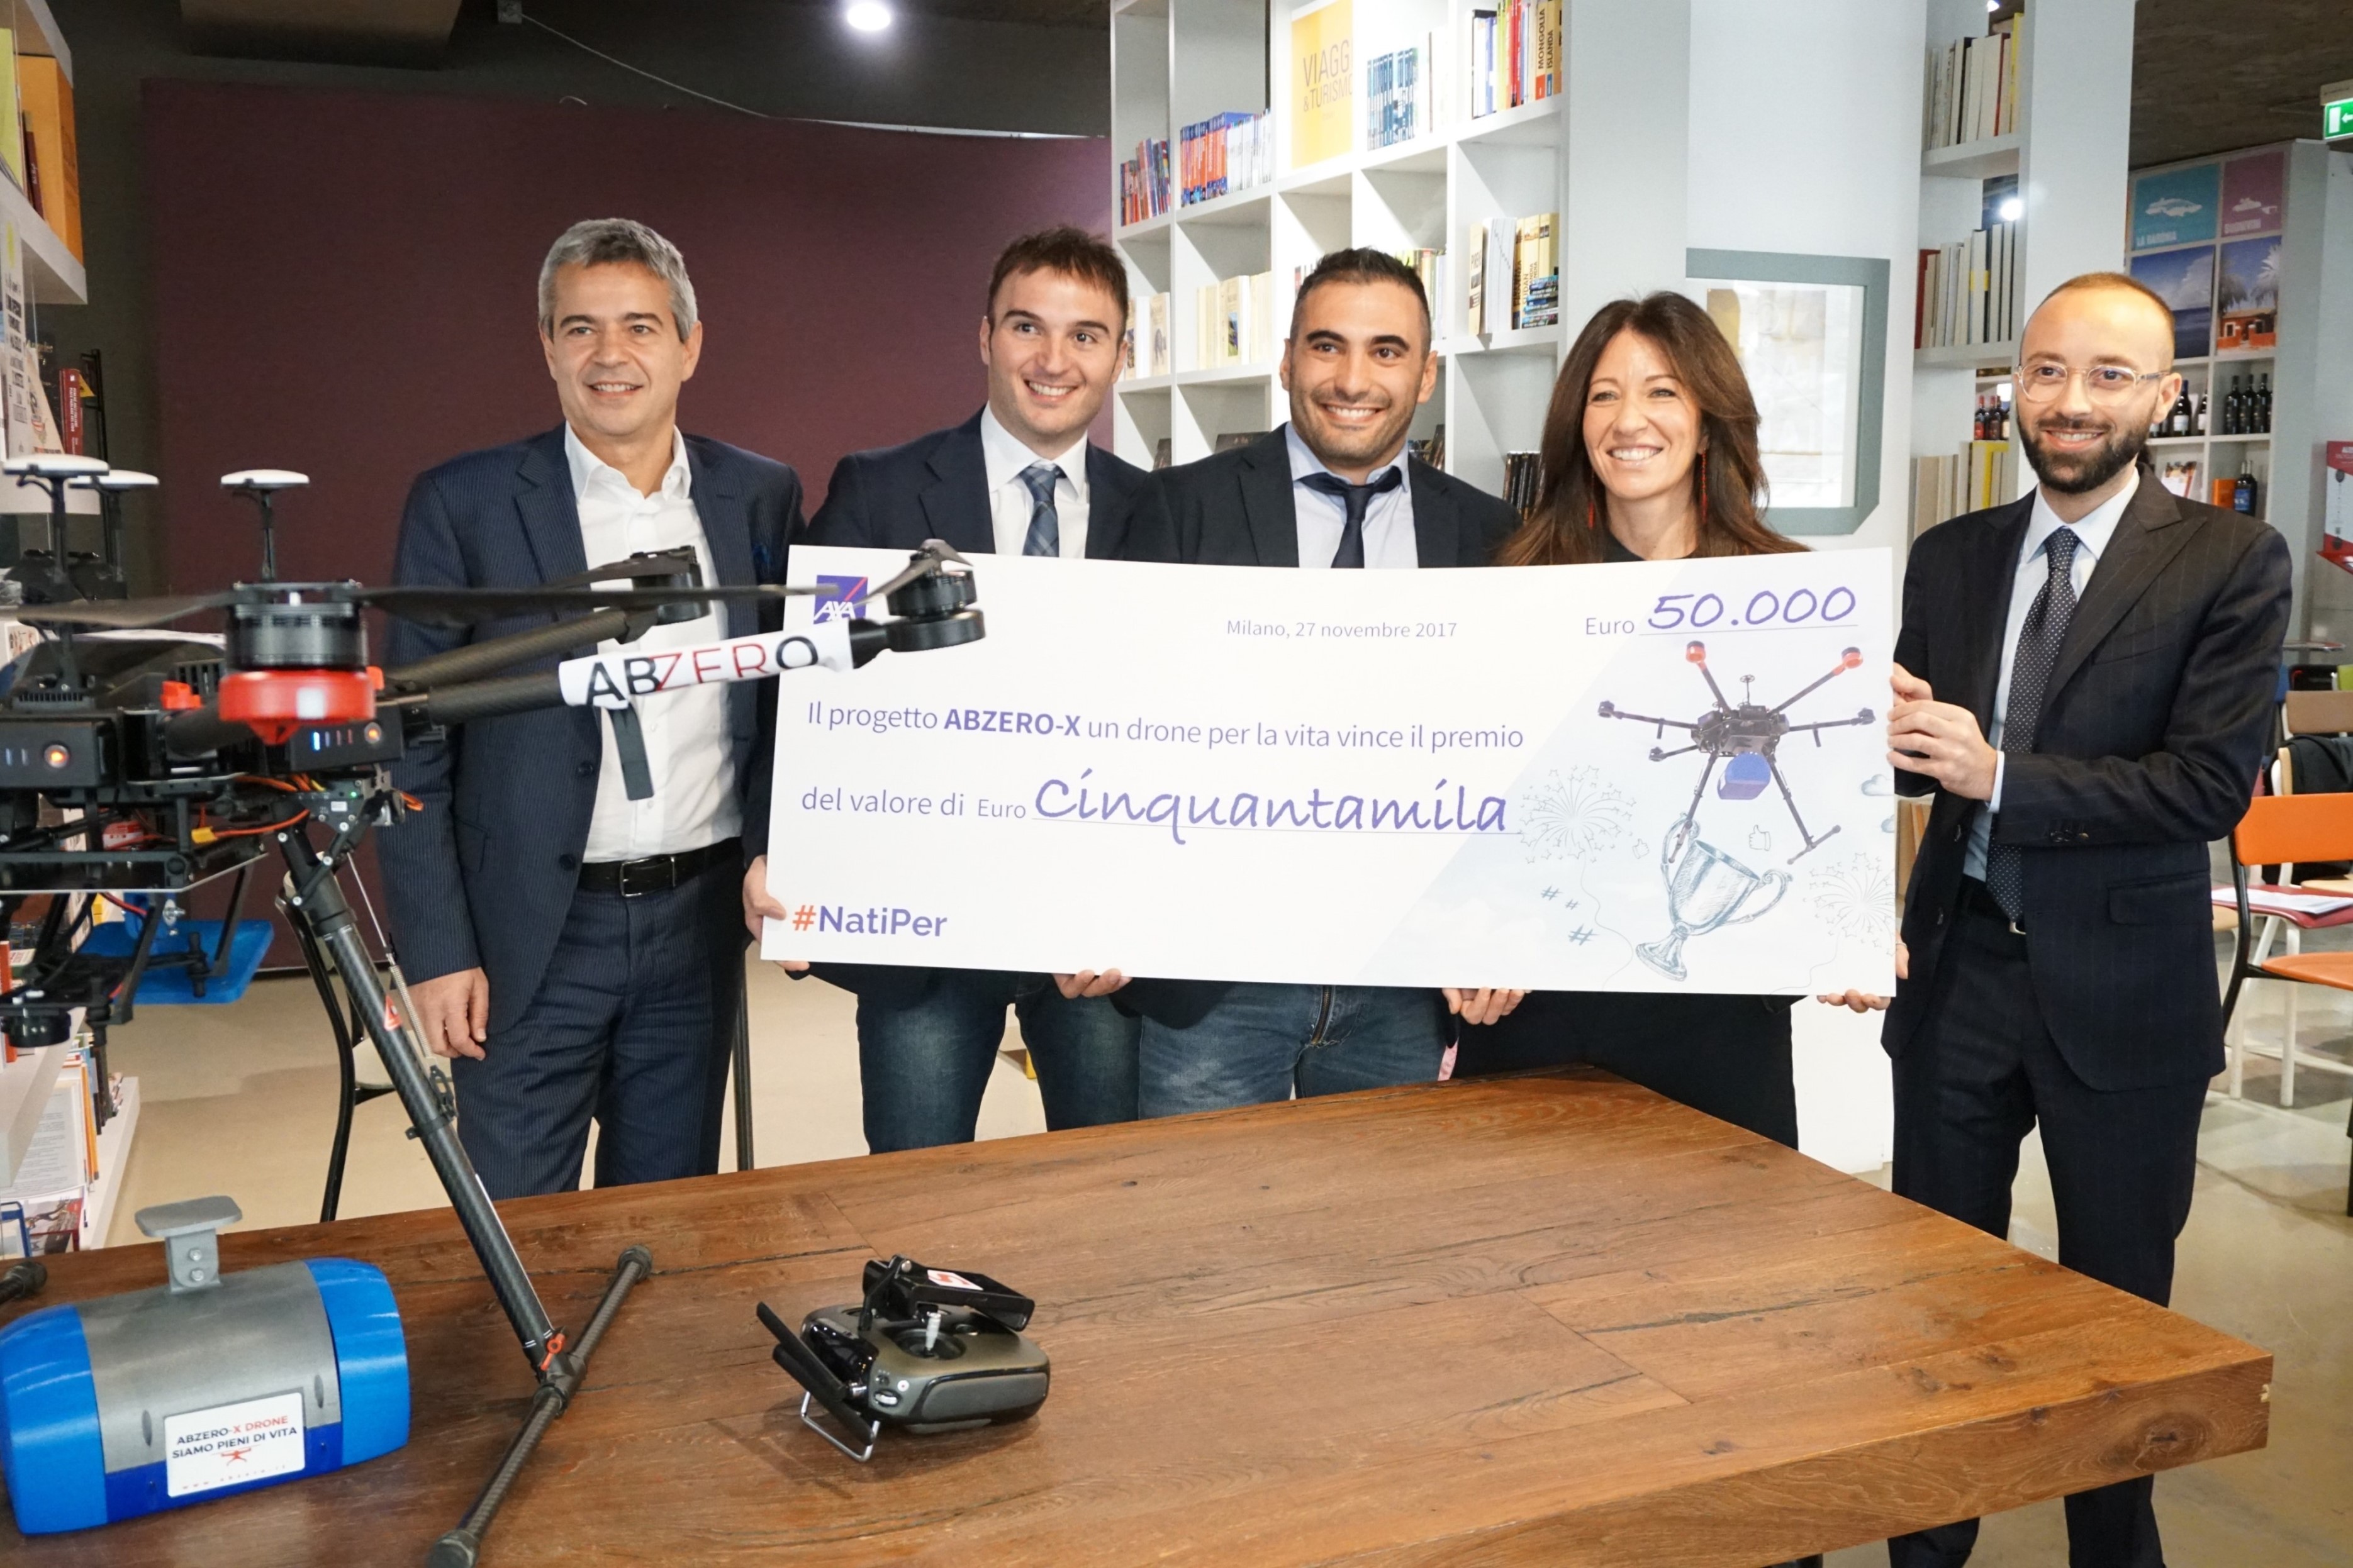 AXA Italia mette le ali ad Abzero, vincitore di  #NatiPer, grazie a un premio del valore di 50.000 euro. Strumenti e software per far volare il drone per la vita